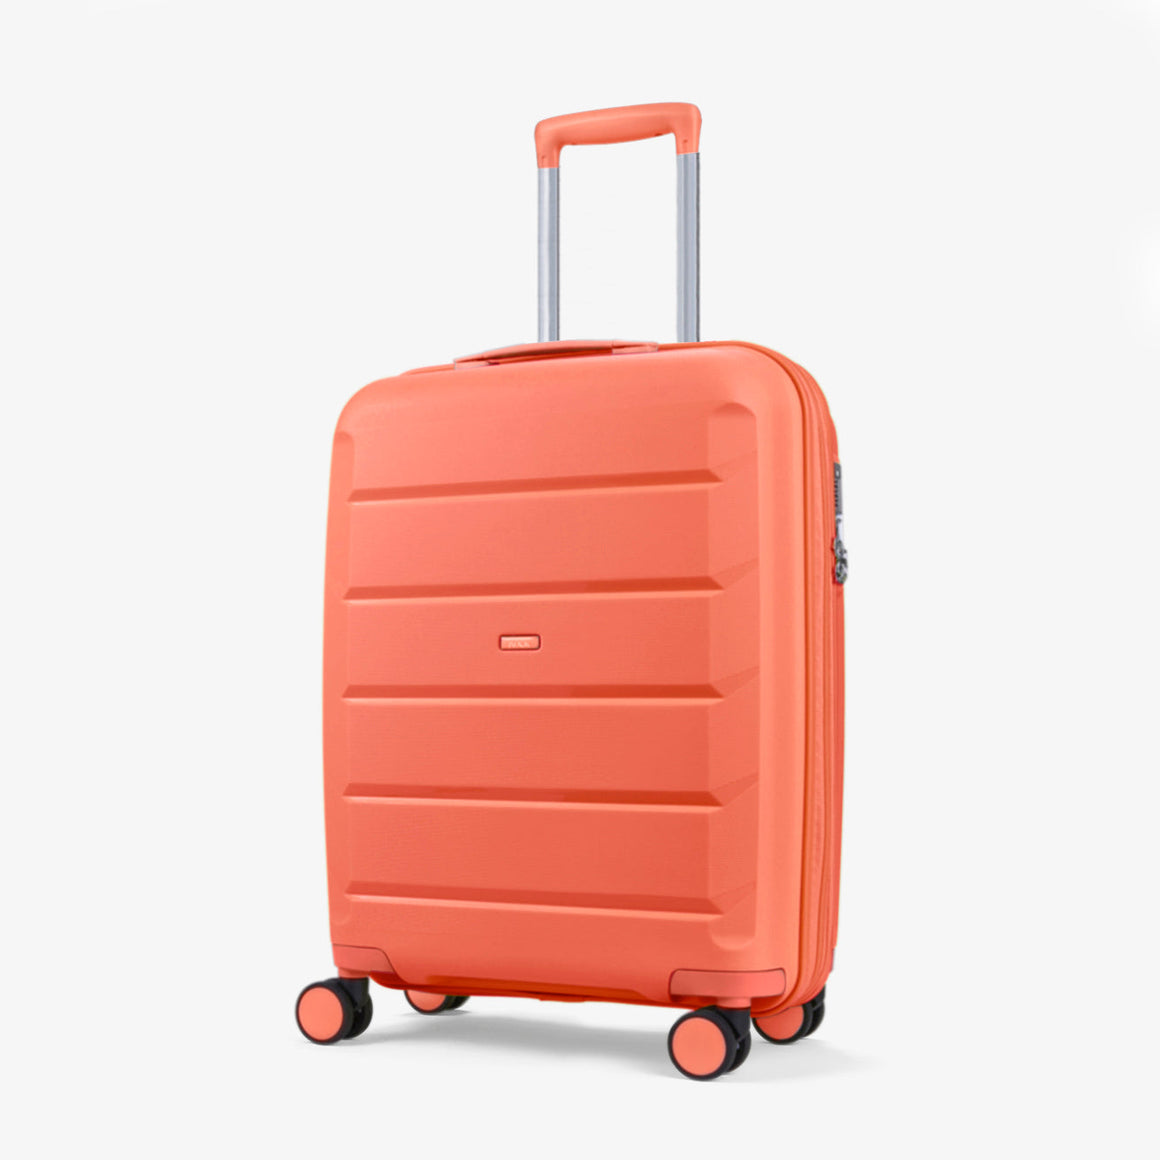 Tulum Small Suitcase in Peach